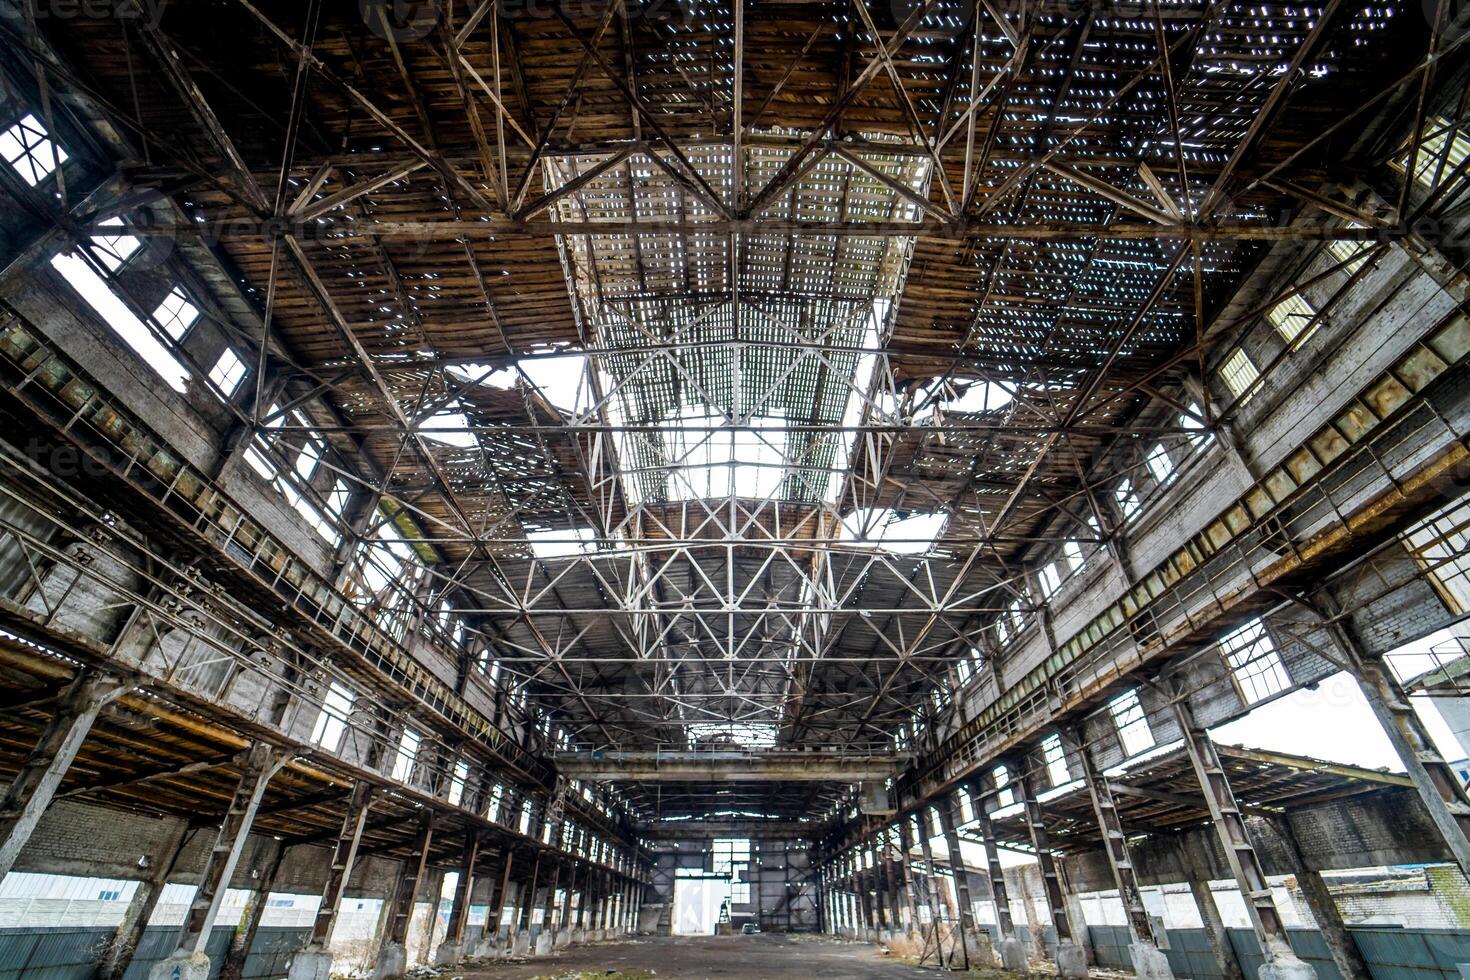 Licht industriell Innere von ein alt Gebäude mit beschädigt Decke und Wände. verlassen die Architektur von groß gebrochen Warenhaus innen, Ruinen und Abriss Konzept. foto